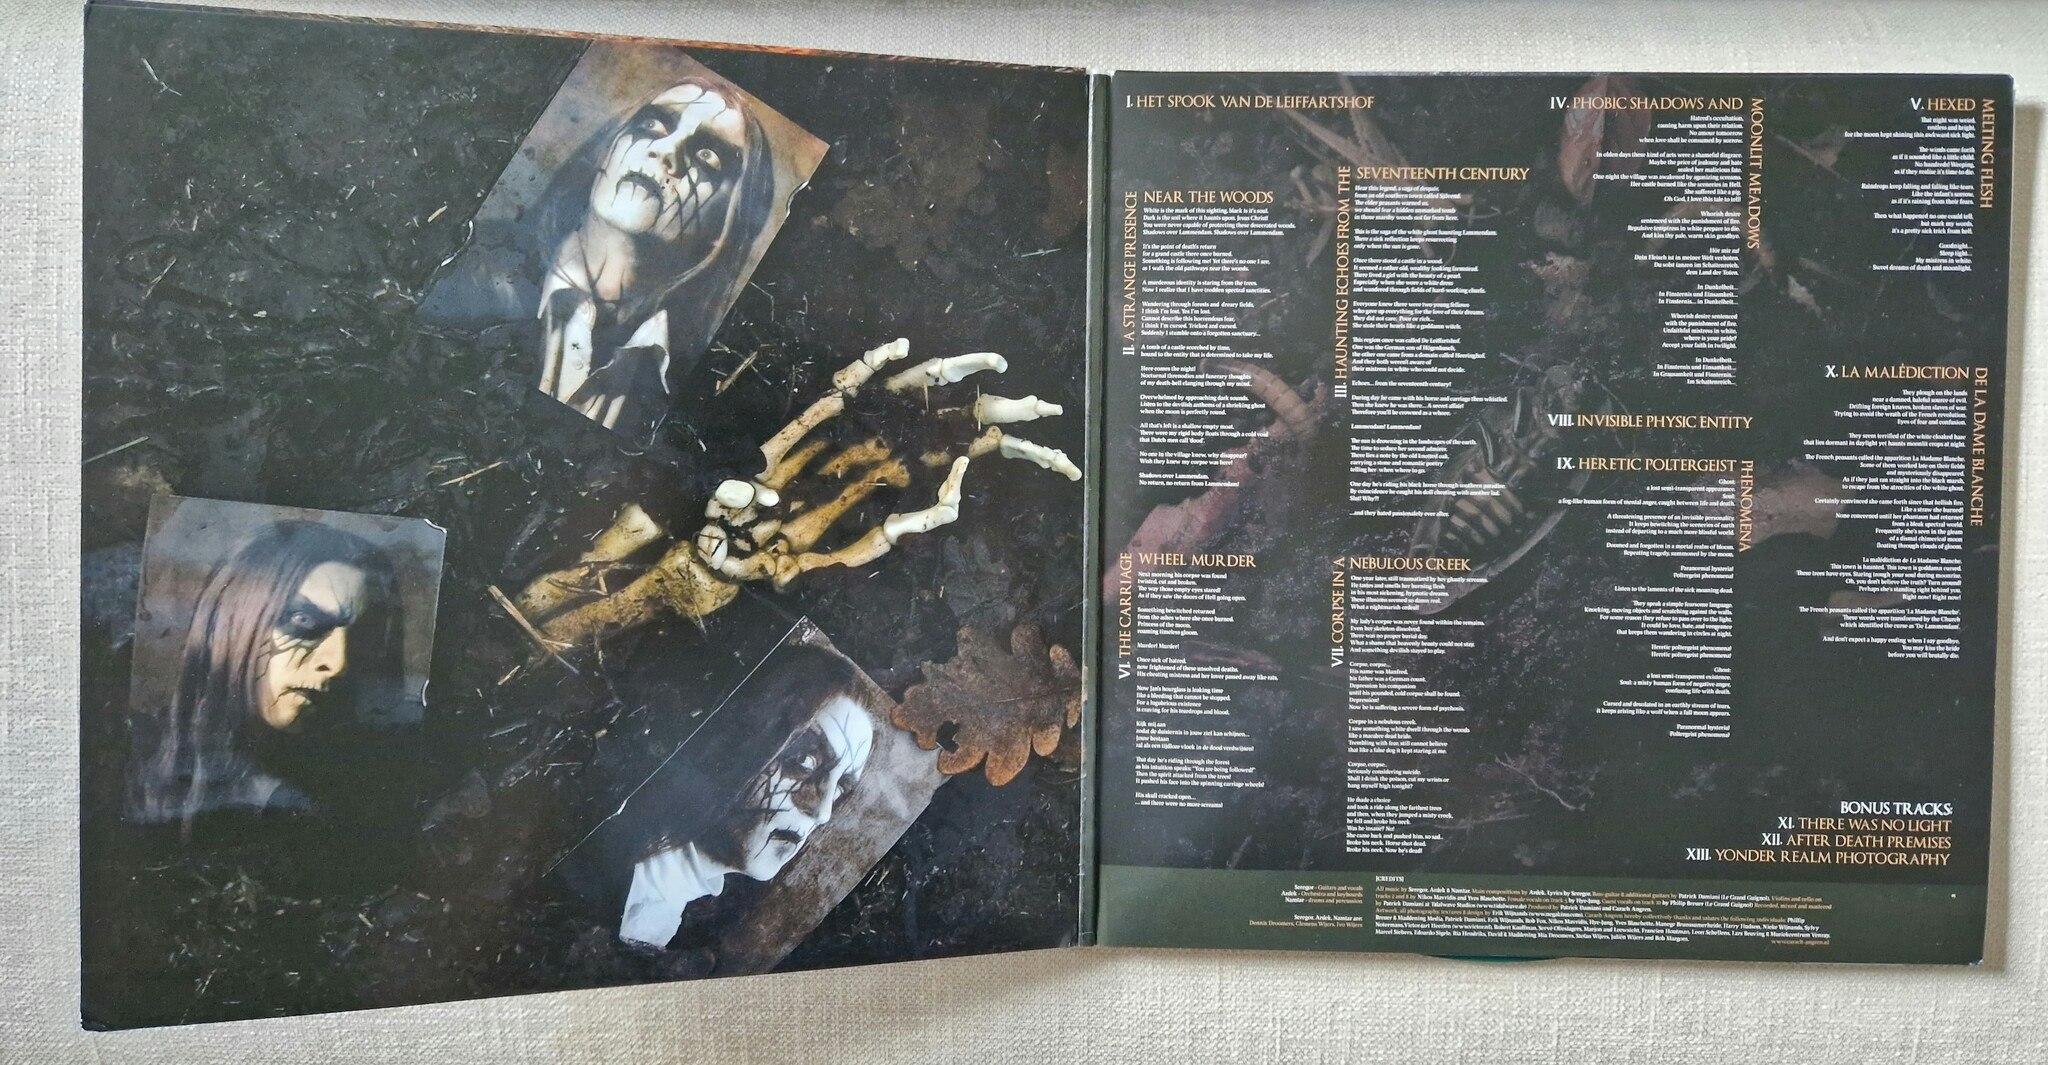 Carach Angren, Lammendam (Green 300 copies). Vinyl 2LP